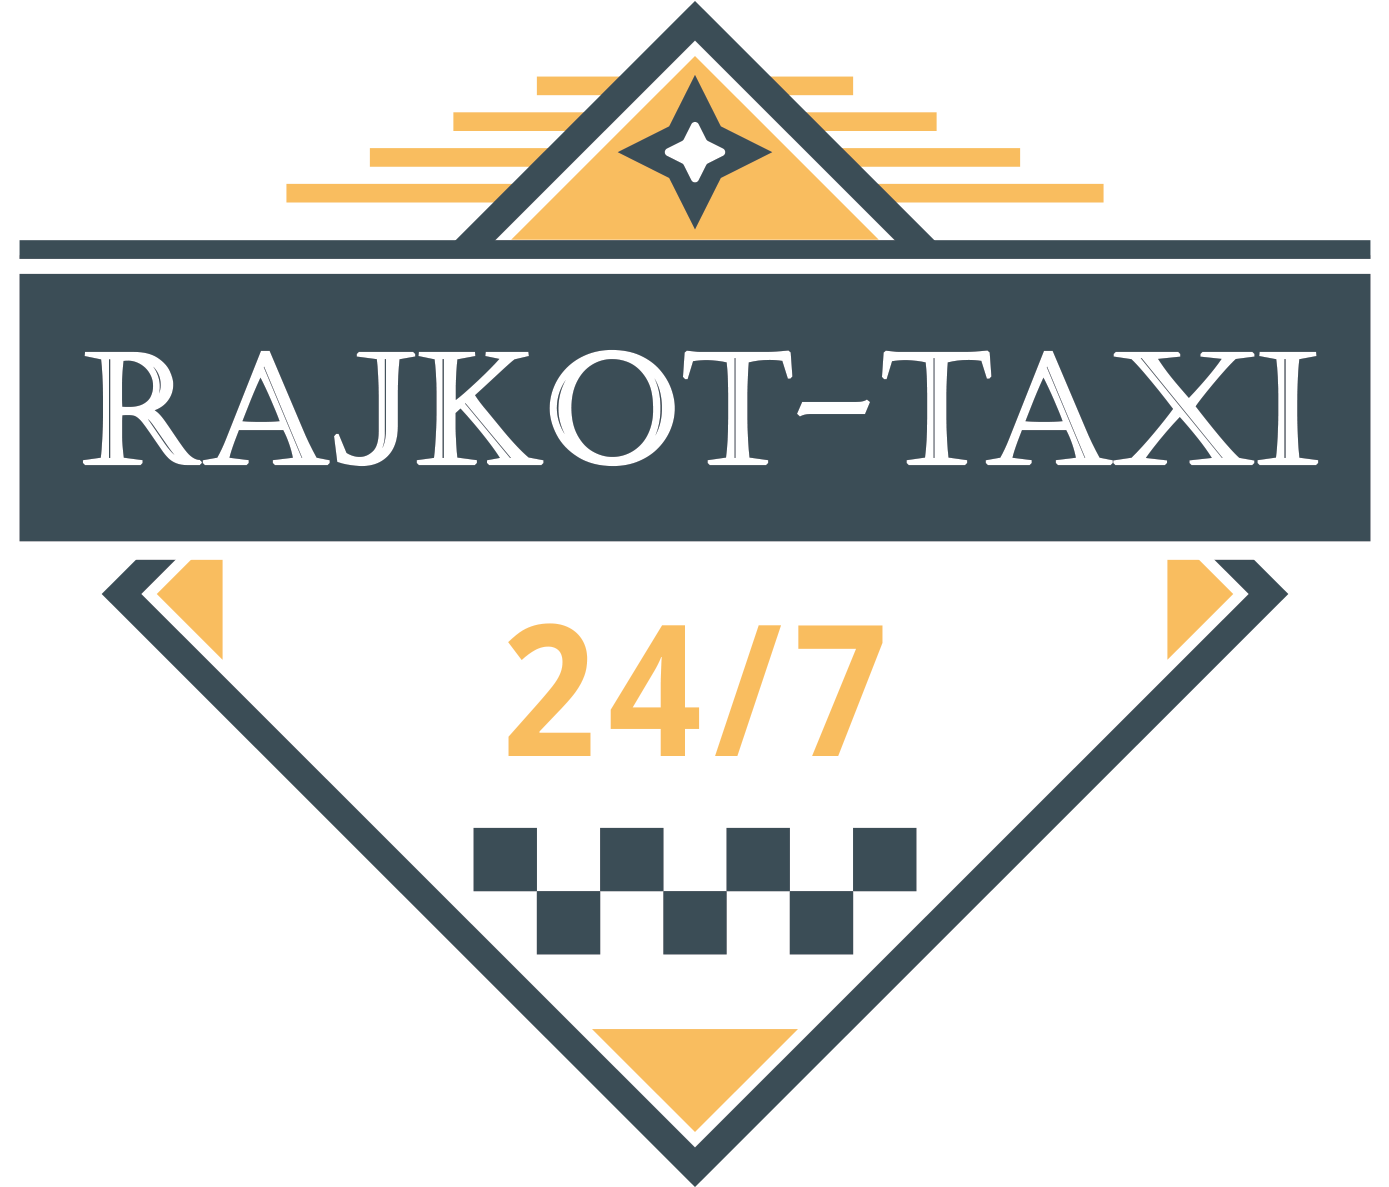 Rajkot Taxi Service Logo PNG image